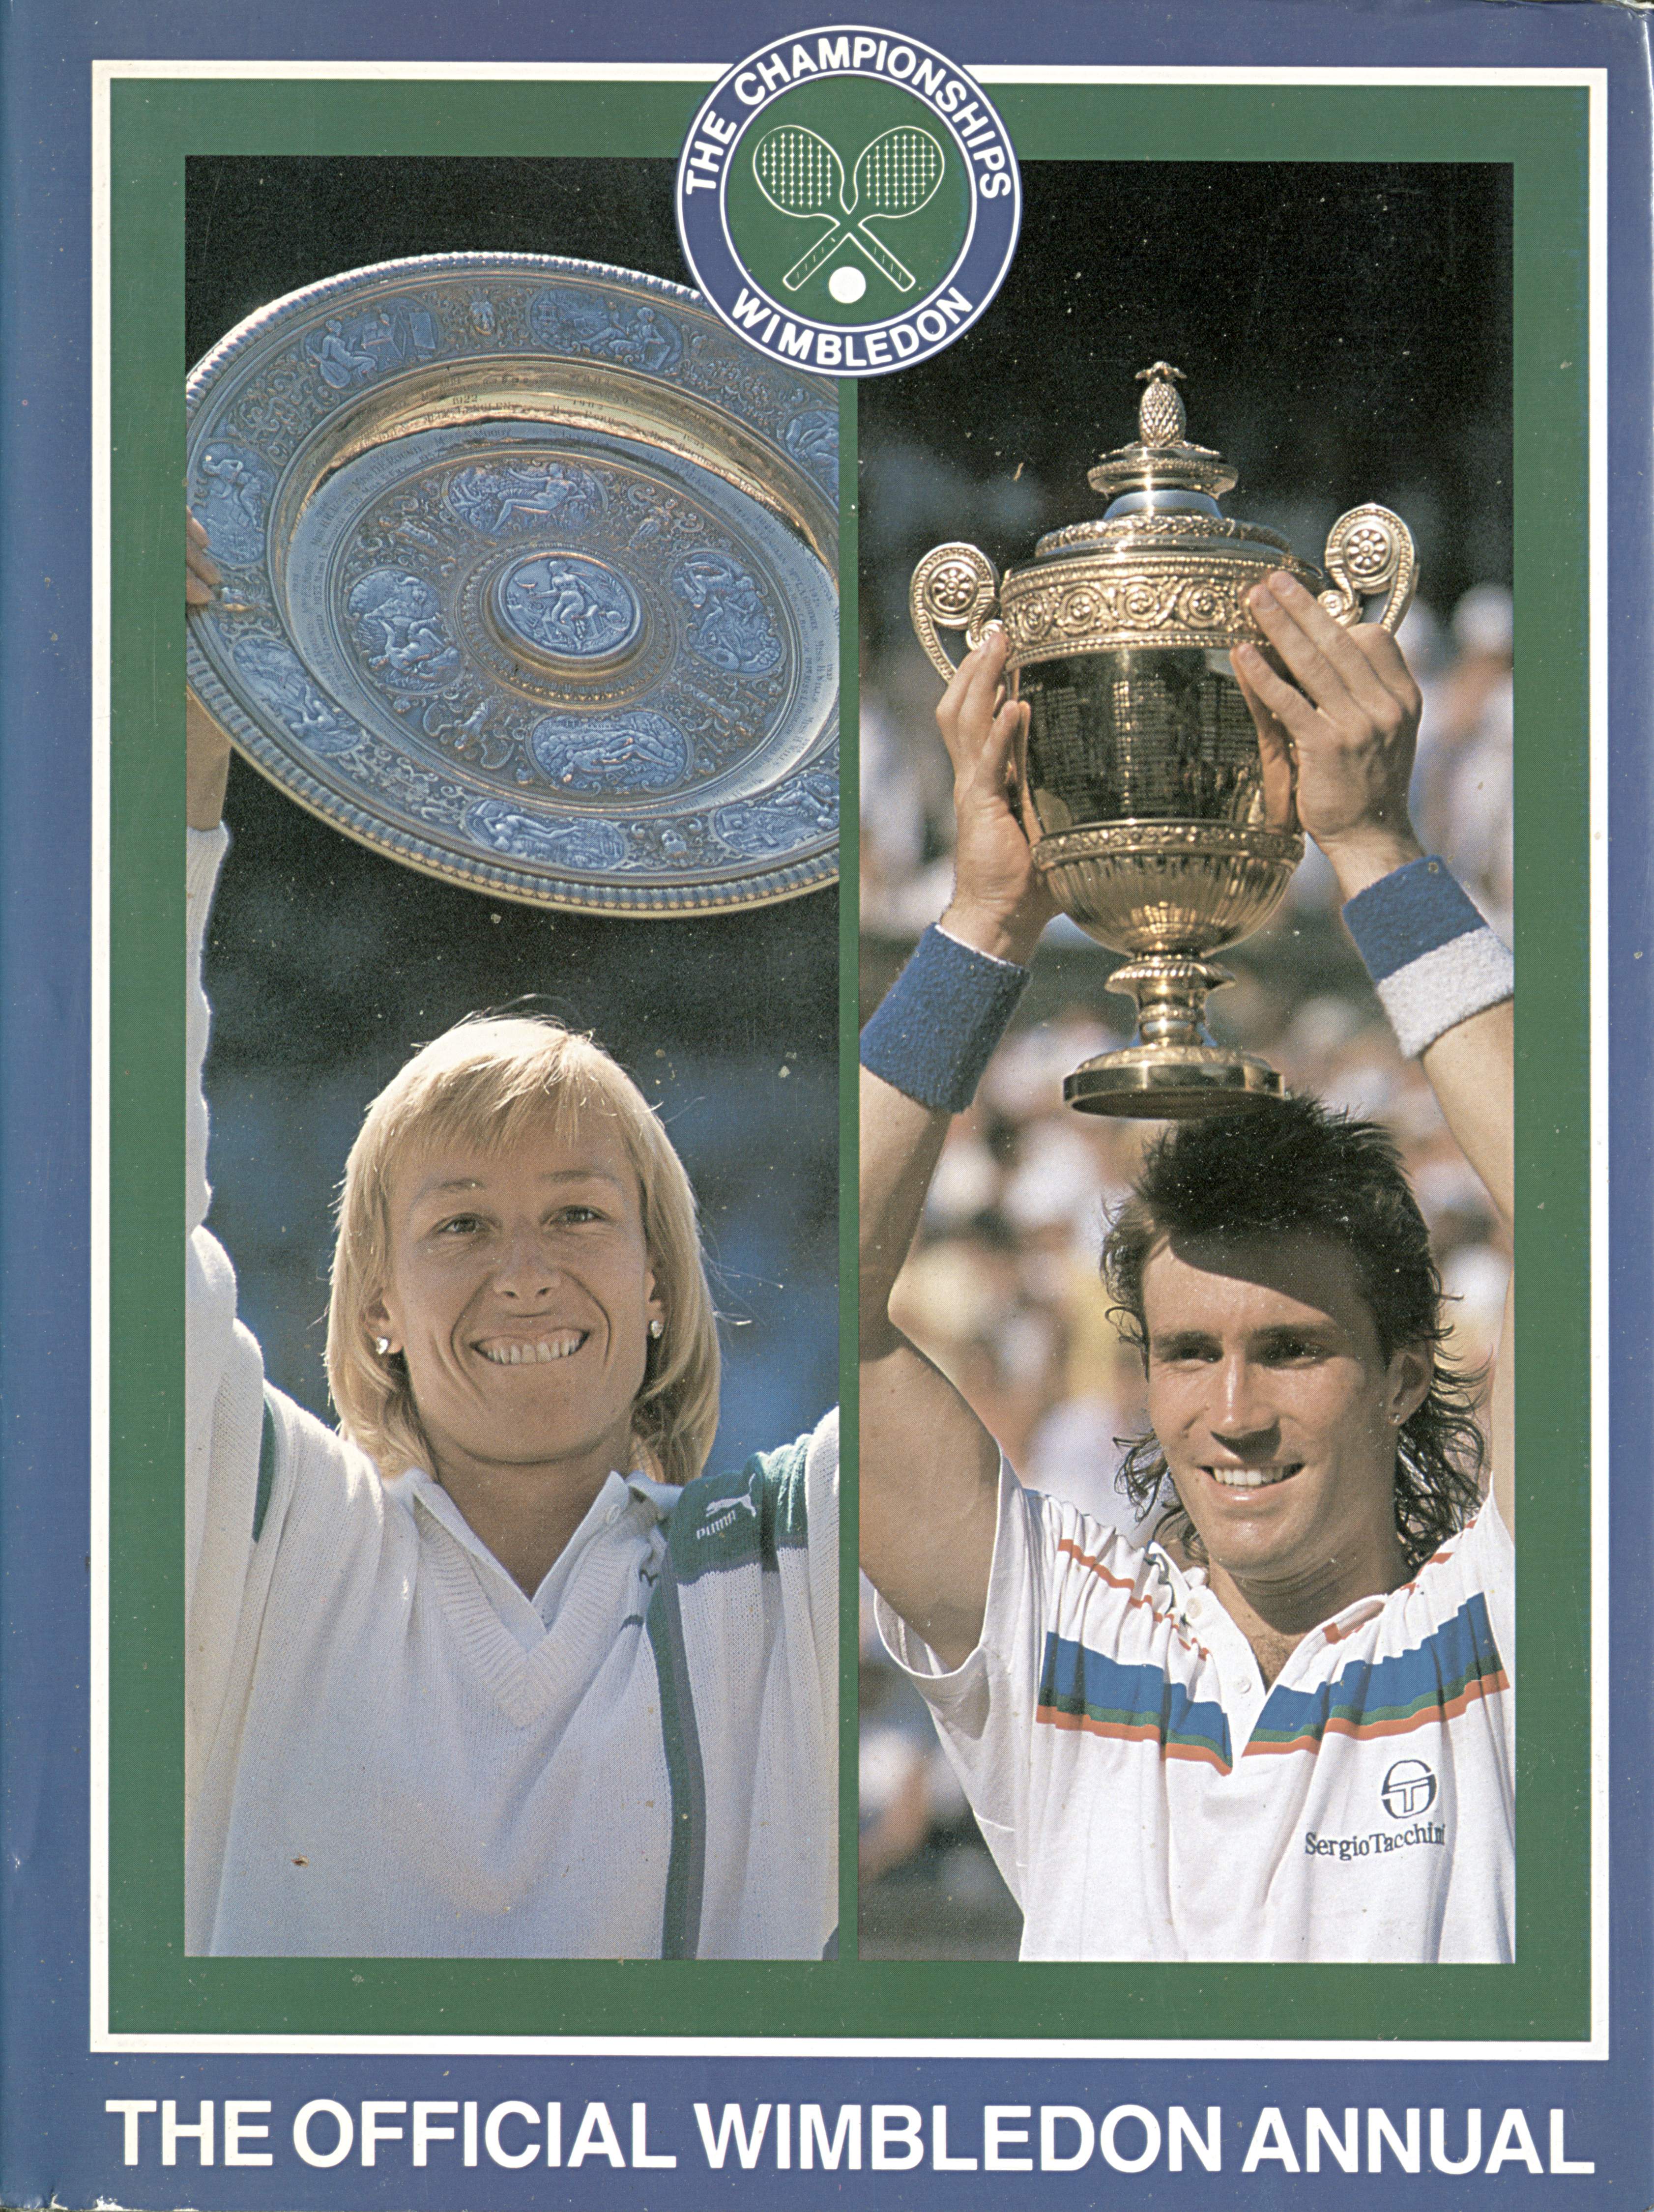 The Championships Wimbledon 1987